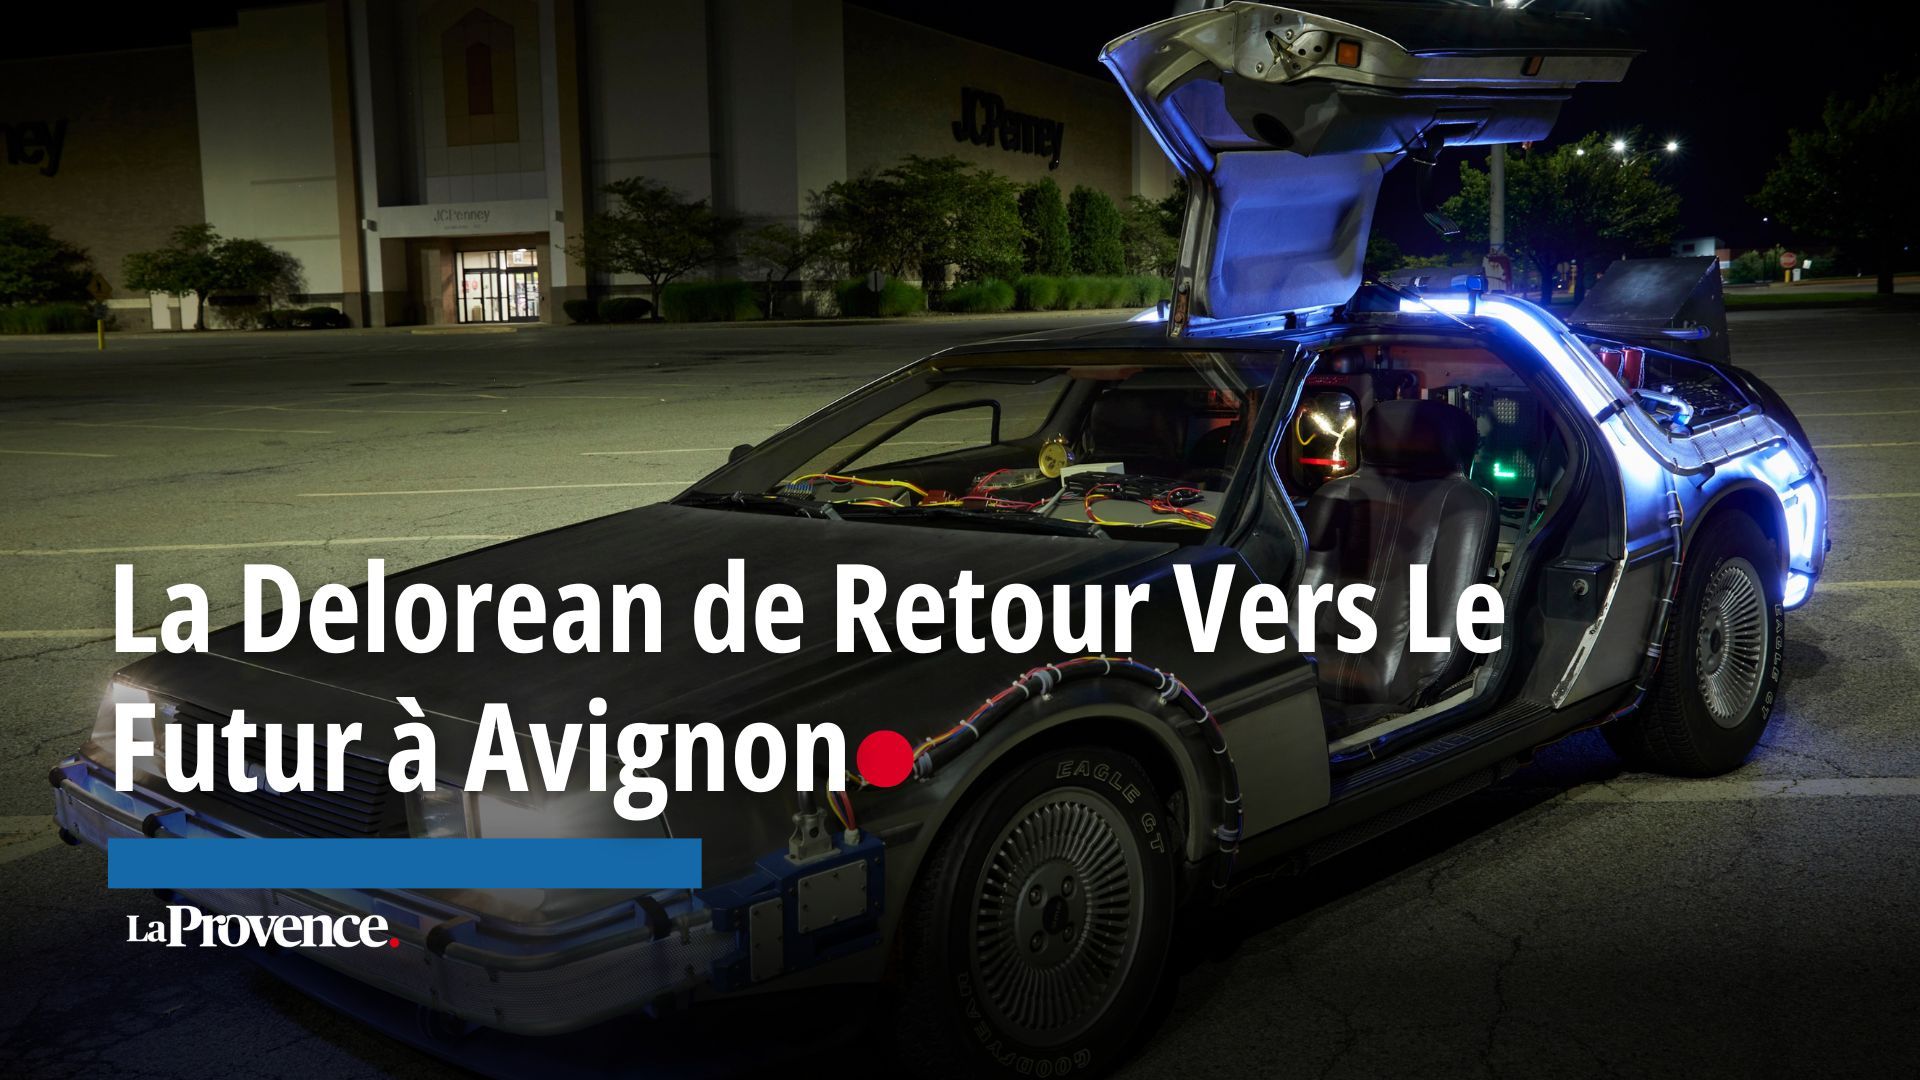 La mythique DeLorean de Retour vers le futur fait son come-back